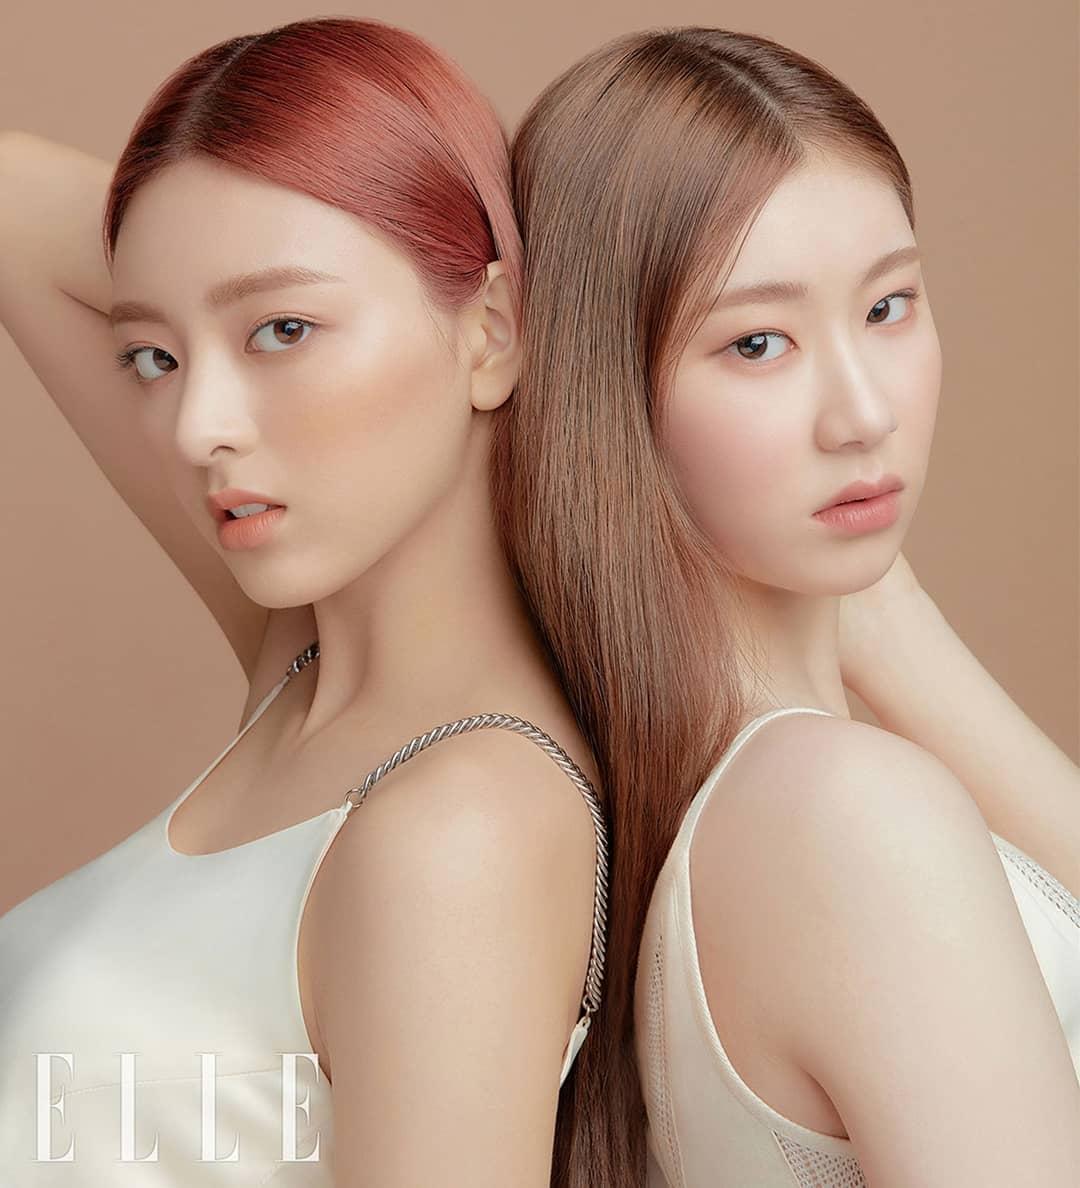 ITZY продемонстрировали естественный макияж в фотосессии для Elle